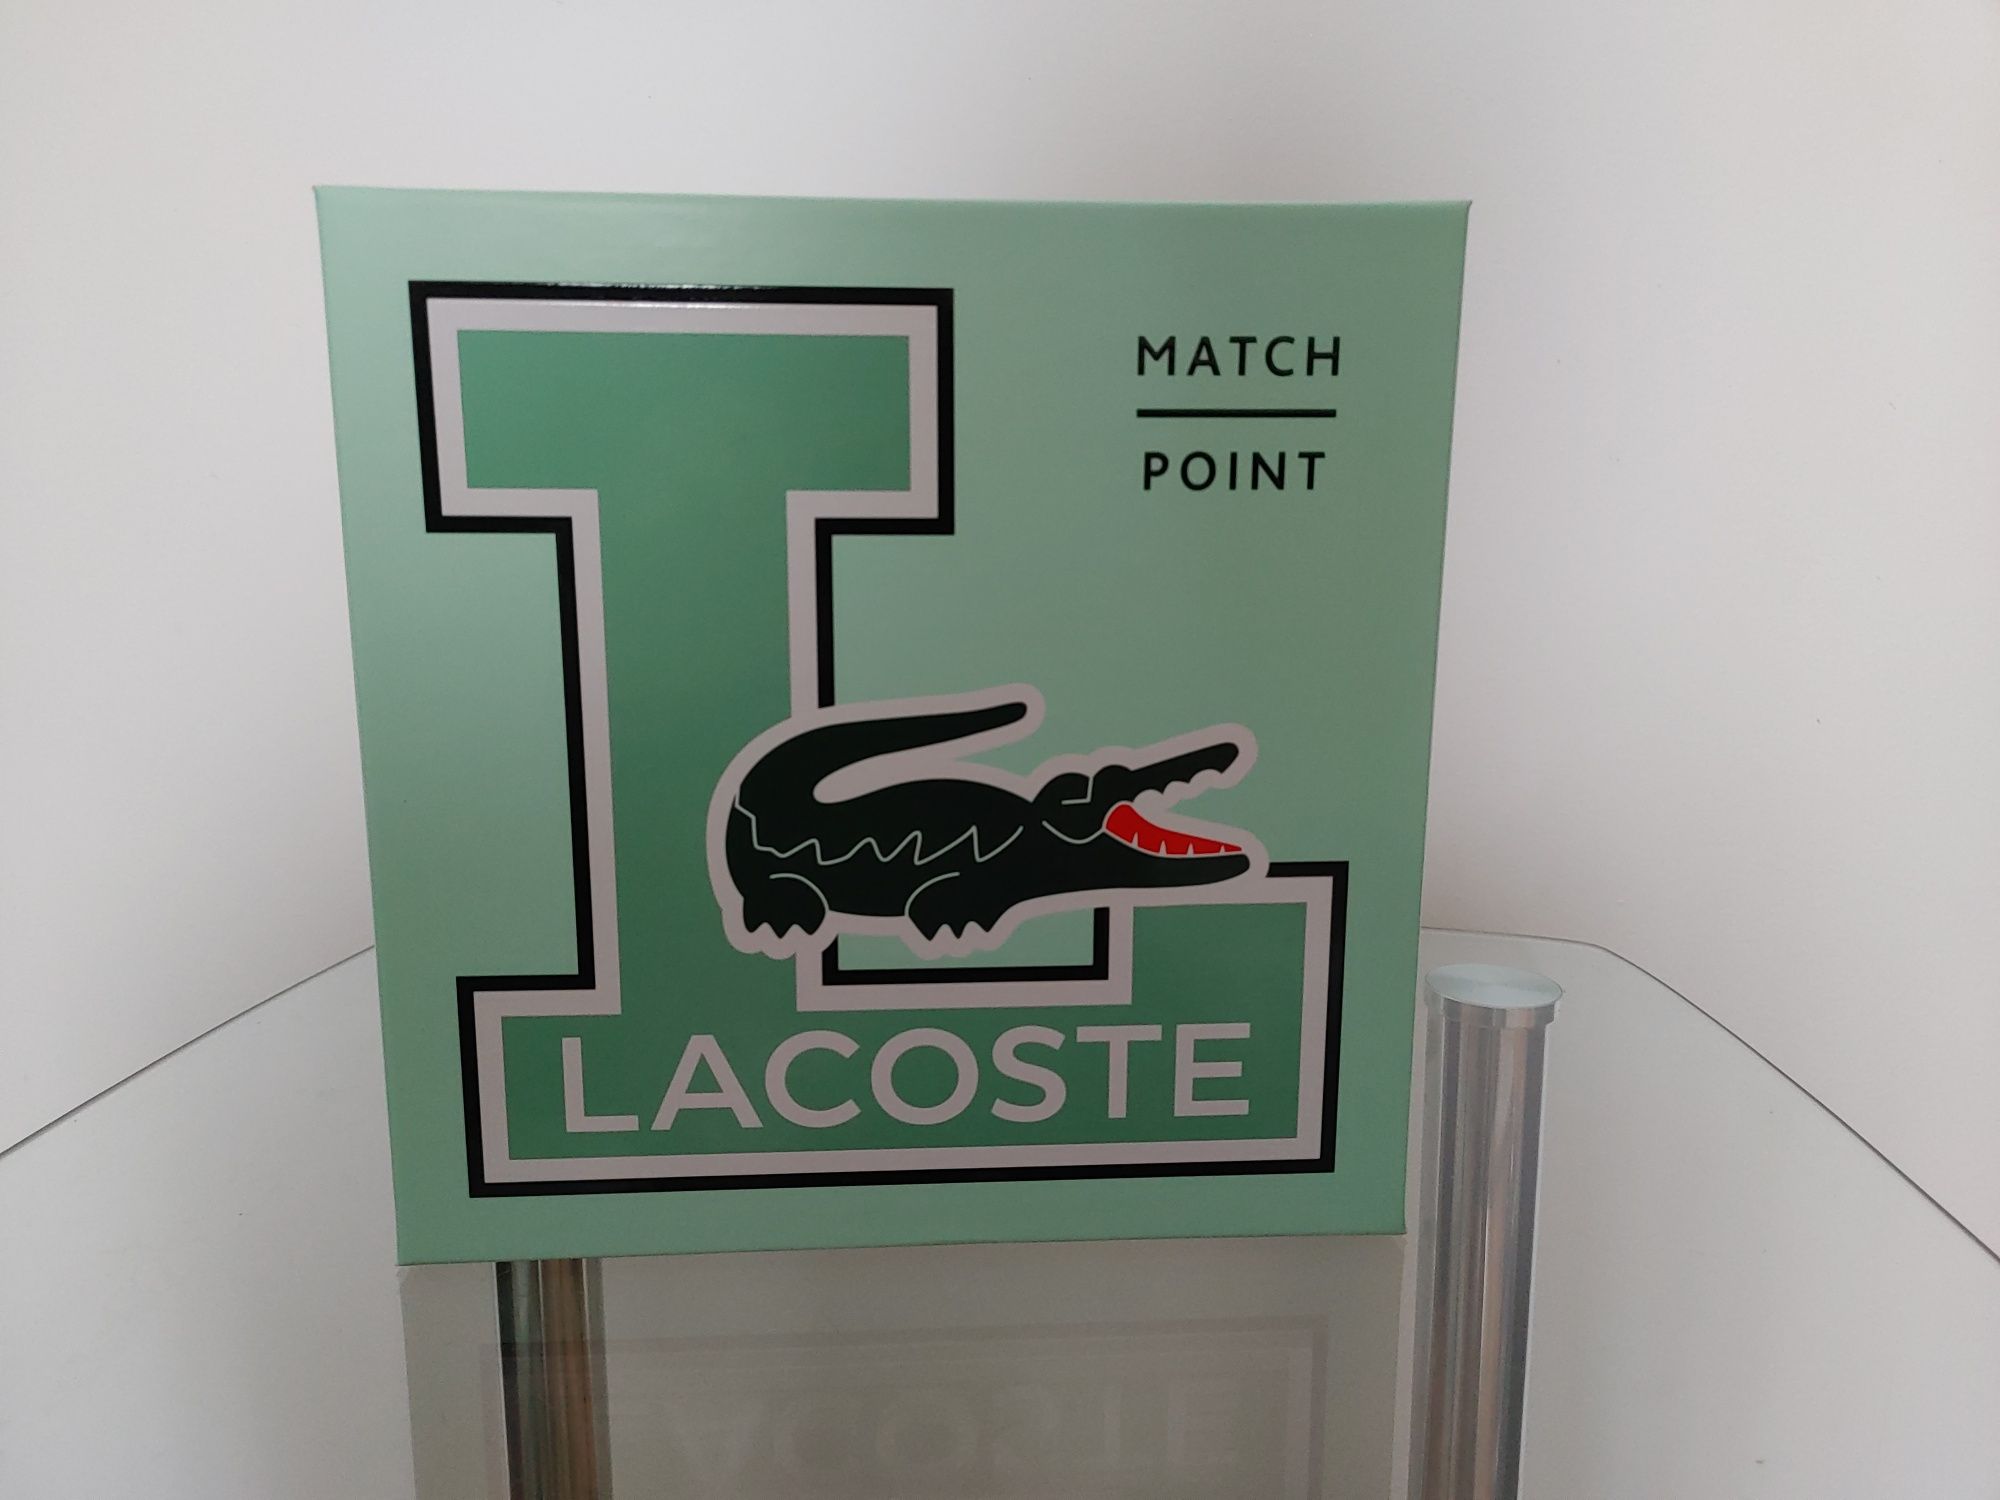 Set parfum Lacoste Match Point